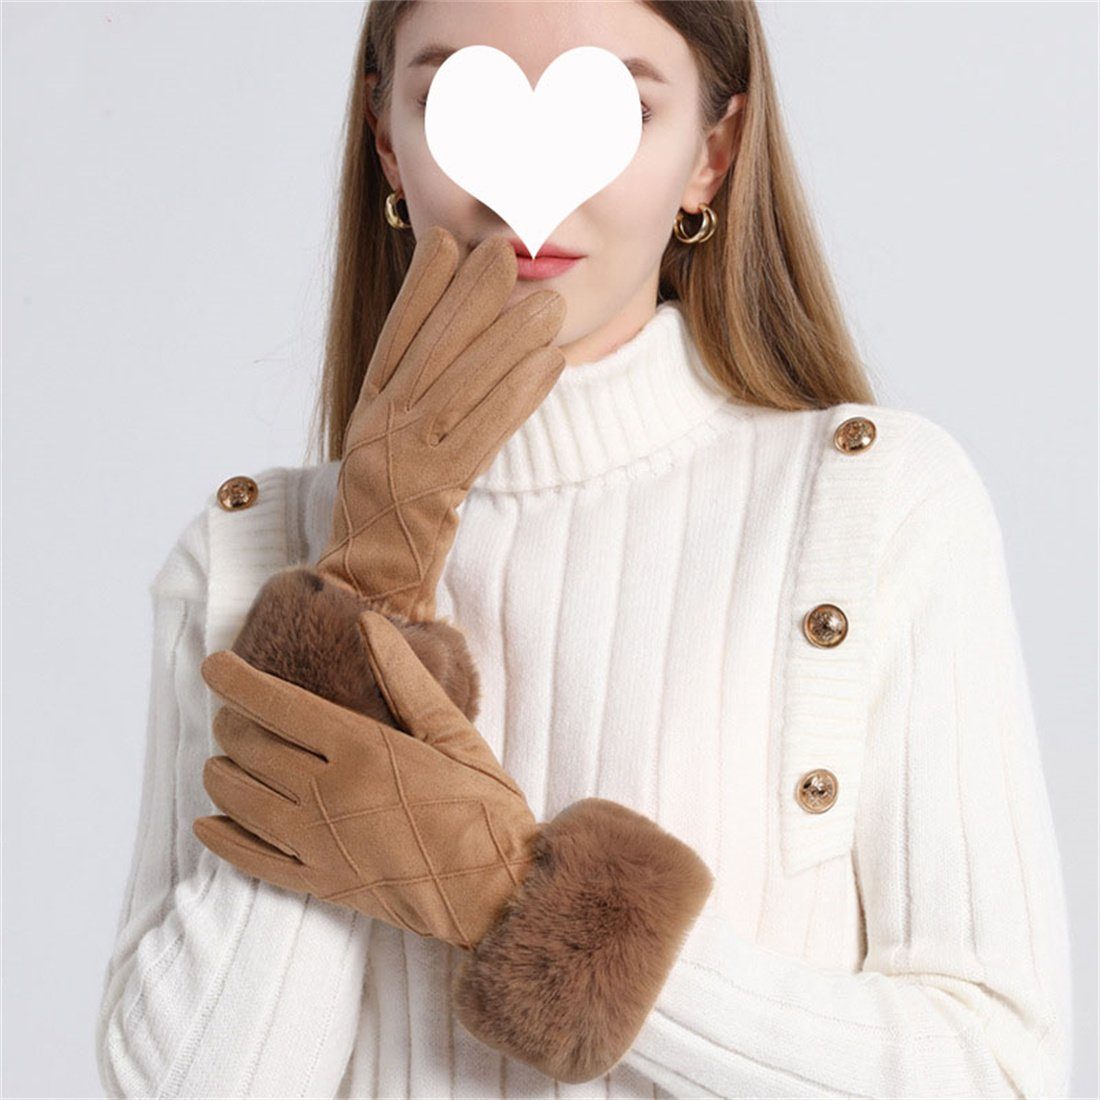 DÖRÖY Damen Handschuhe, Kunstfell Fleecehandschuhe Handschuhe Touchscreen warme gepolsterte khaki